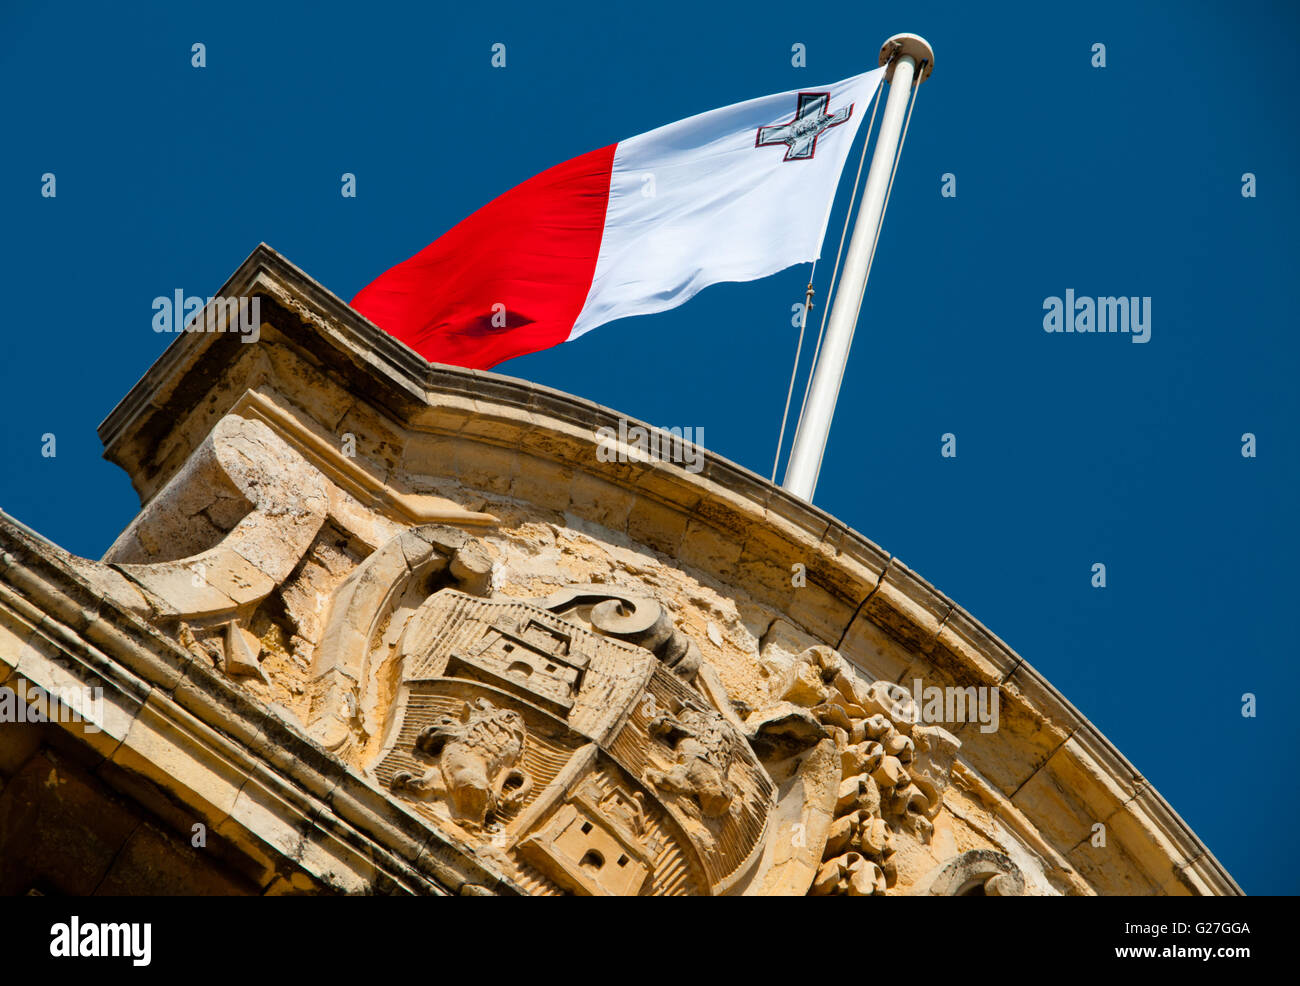 Pavillon maltais voler au-dessus de l'Auberge de Castelle, Cabinet du Premier Ministre, La Valette la capitale de Malte Banque D'Images